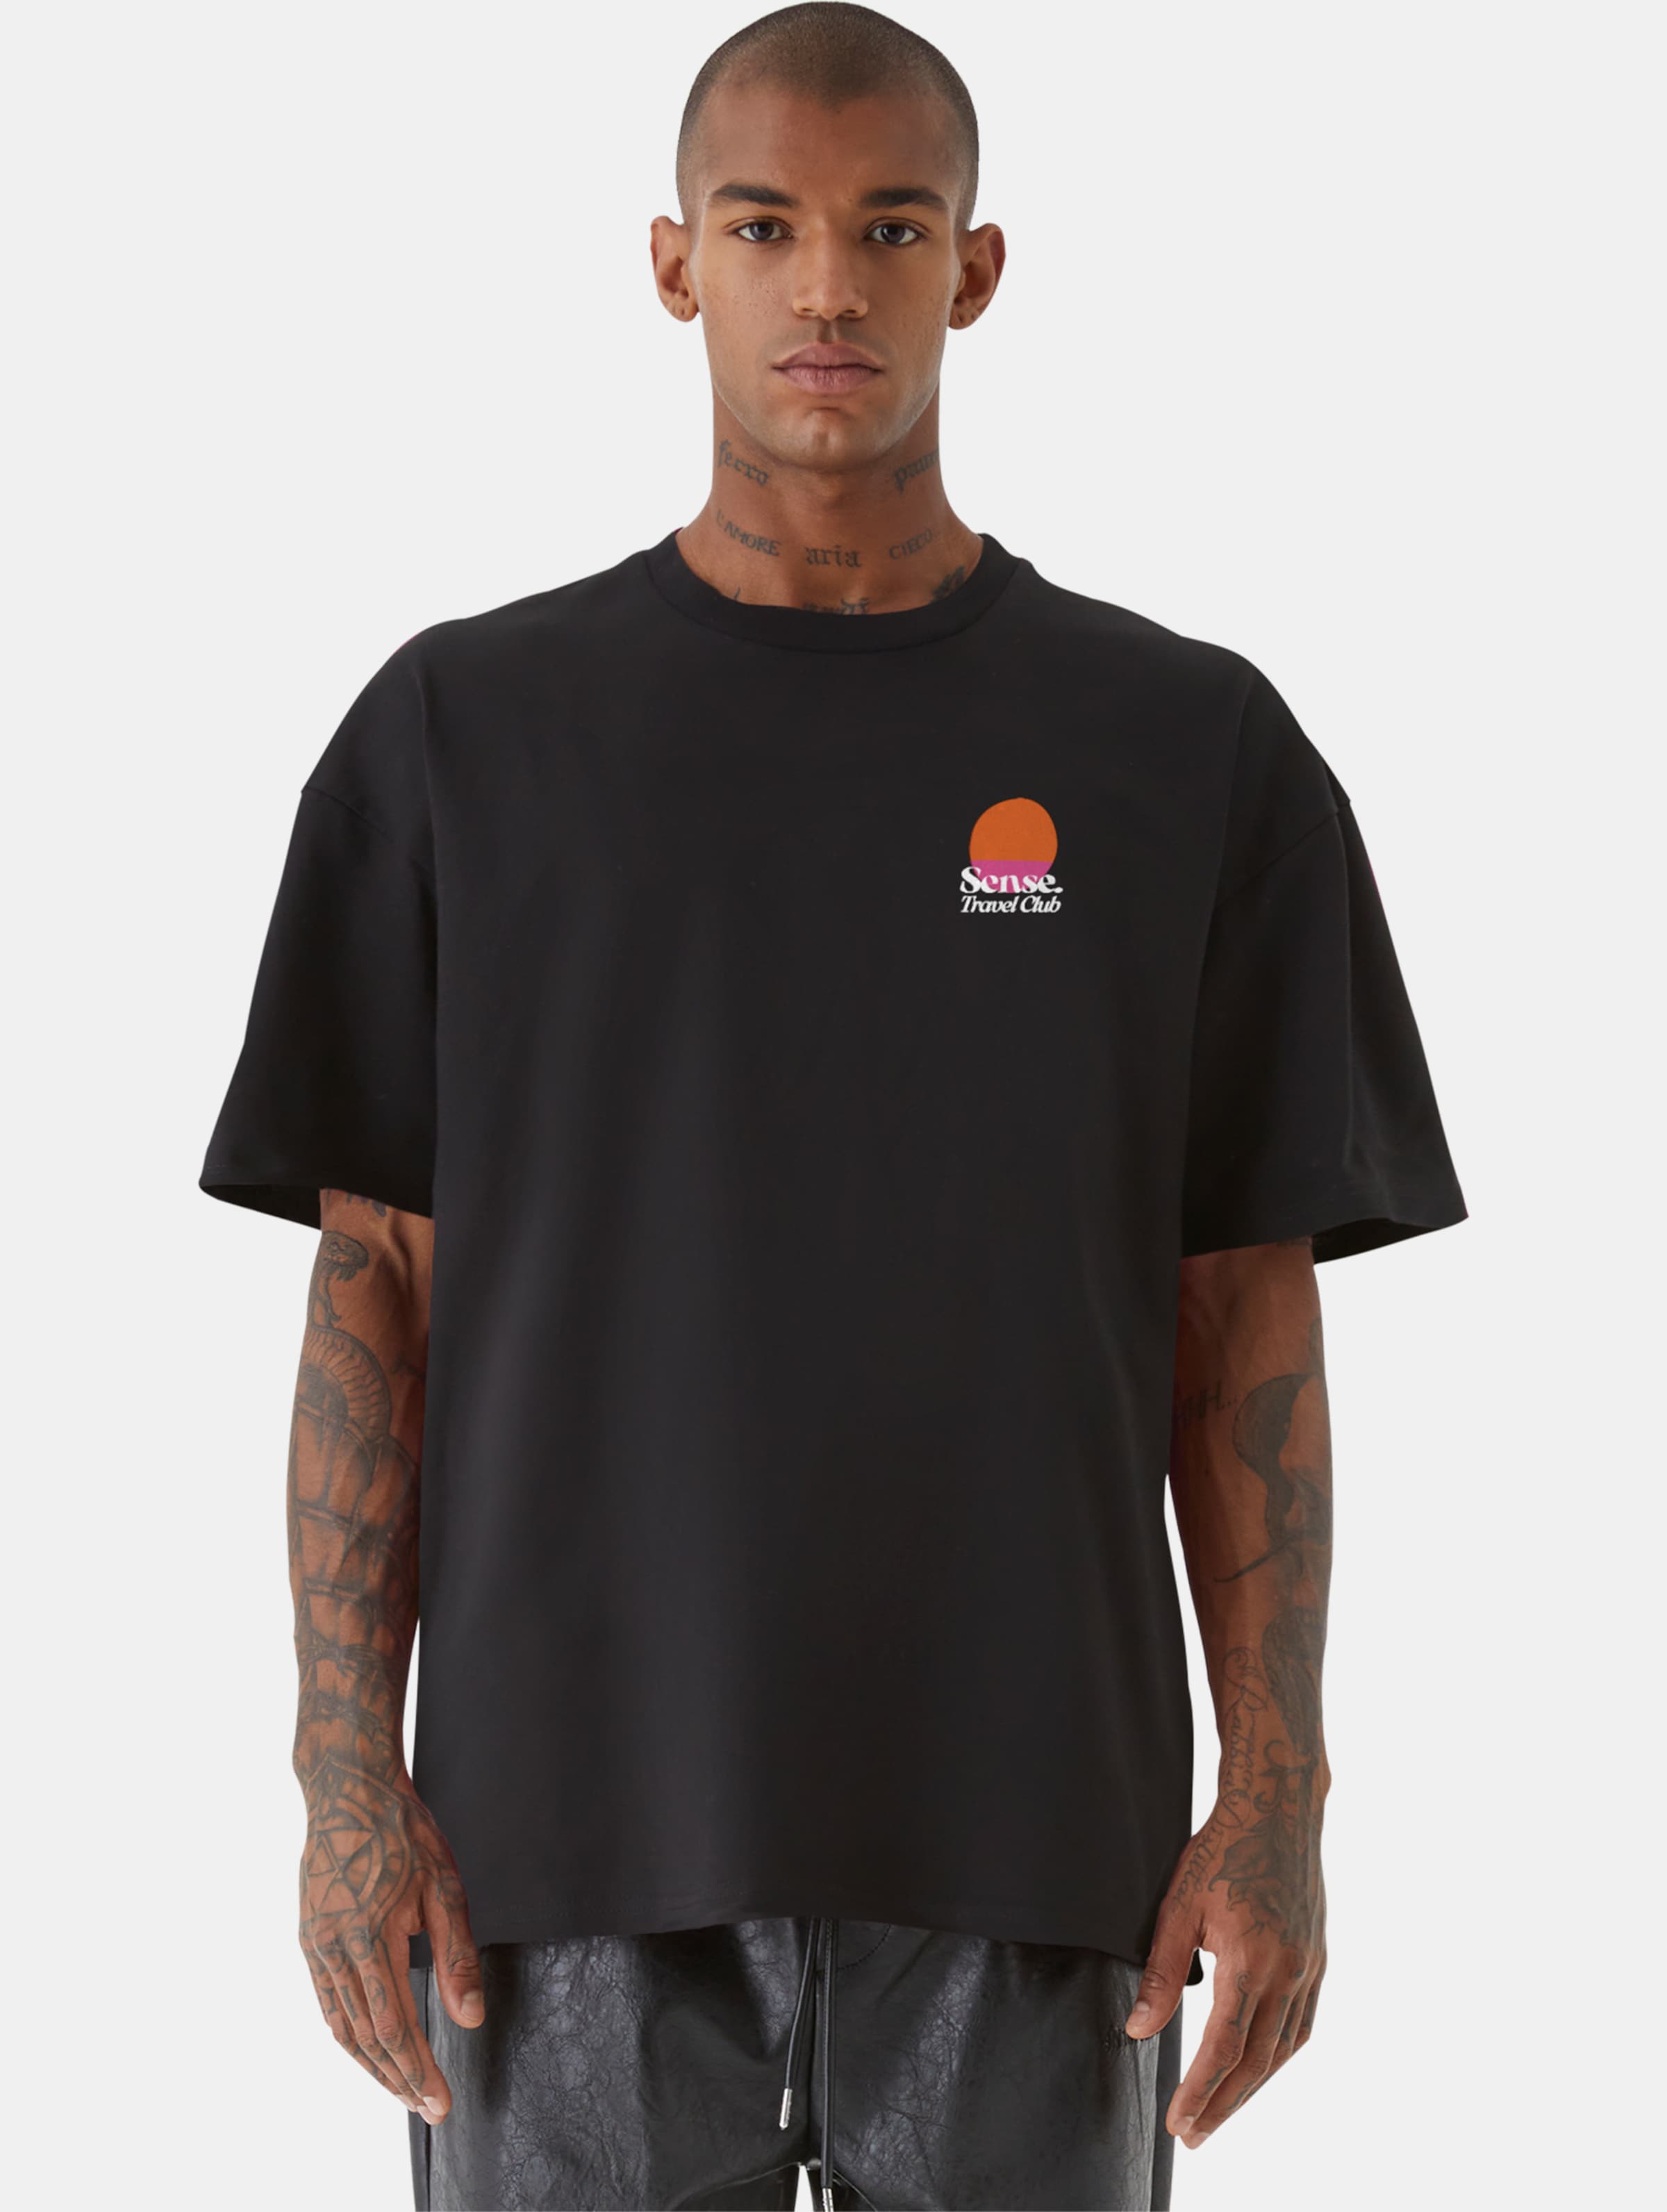 9N1M SENSE TRAVEL CLUB T-Shirt Männer,Unisex op kleur zwart, Maat XXL